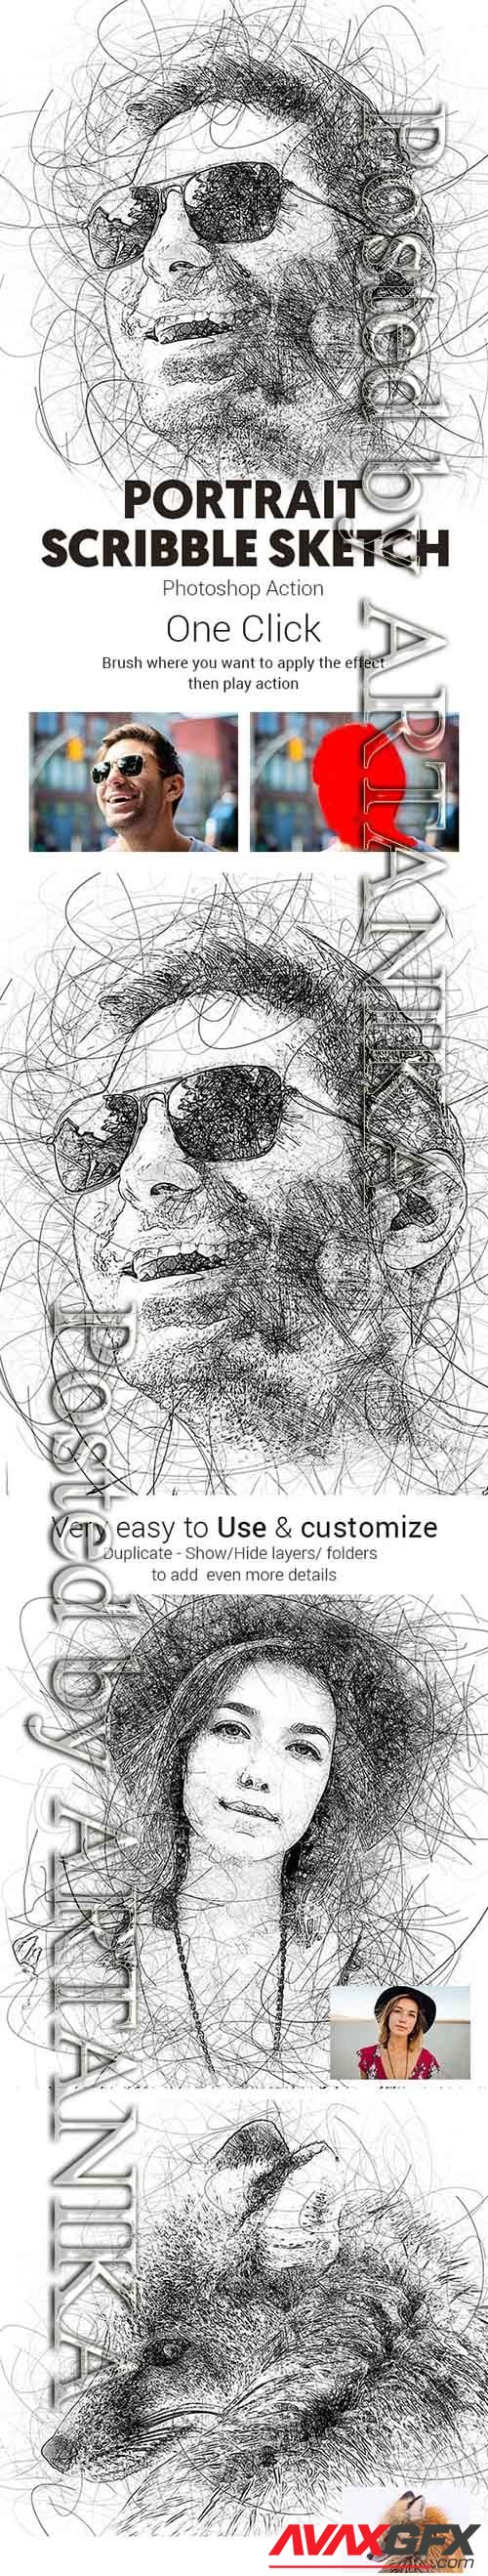 Portrait Scribble Sketch Art Photoshop Action 23191265